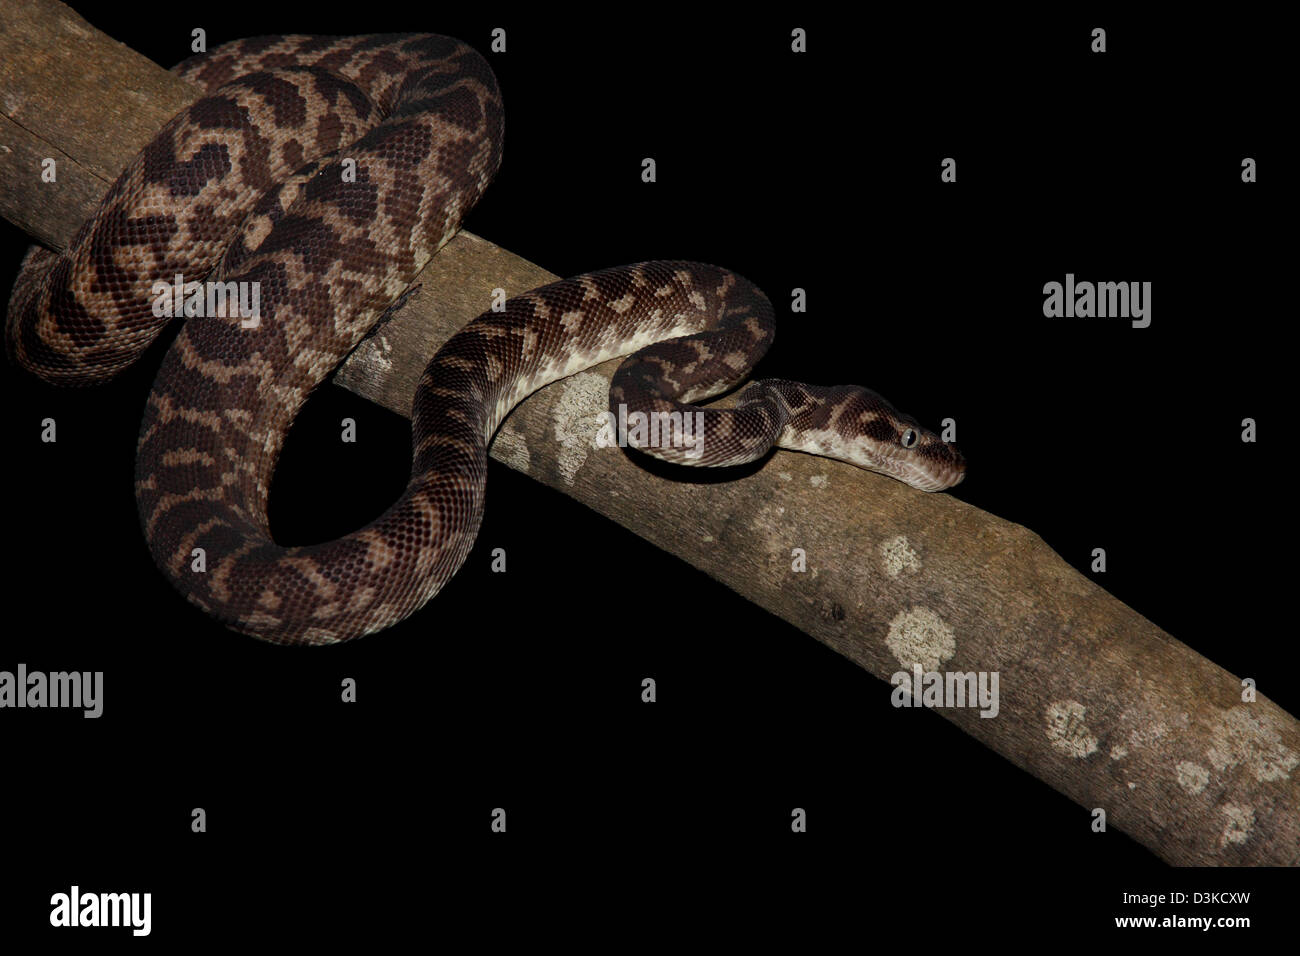 Grobe skalierte Python Morelia Carinataphotographed in einem Studio mit einem schwarzen Hintergrund bereit für Ausschnitt Stockfoto